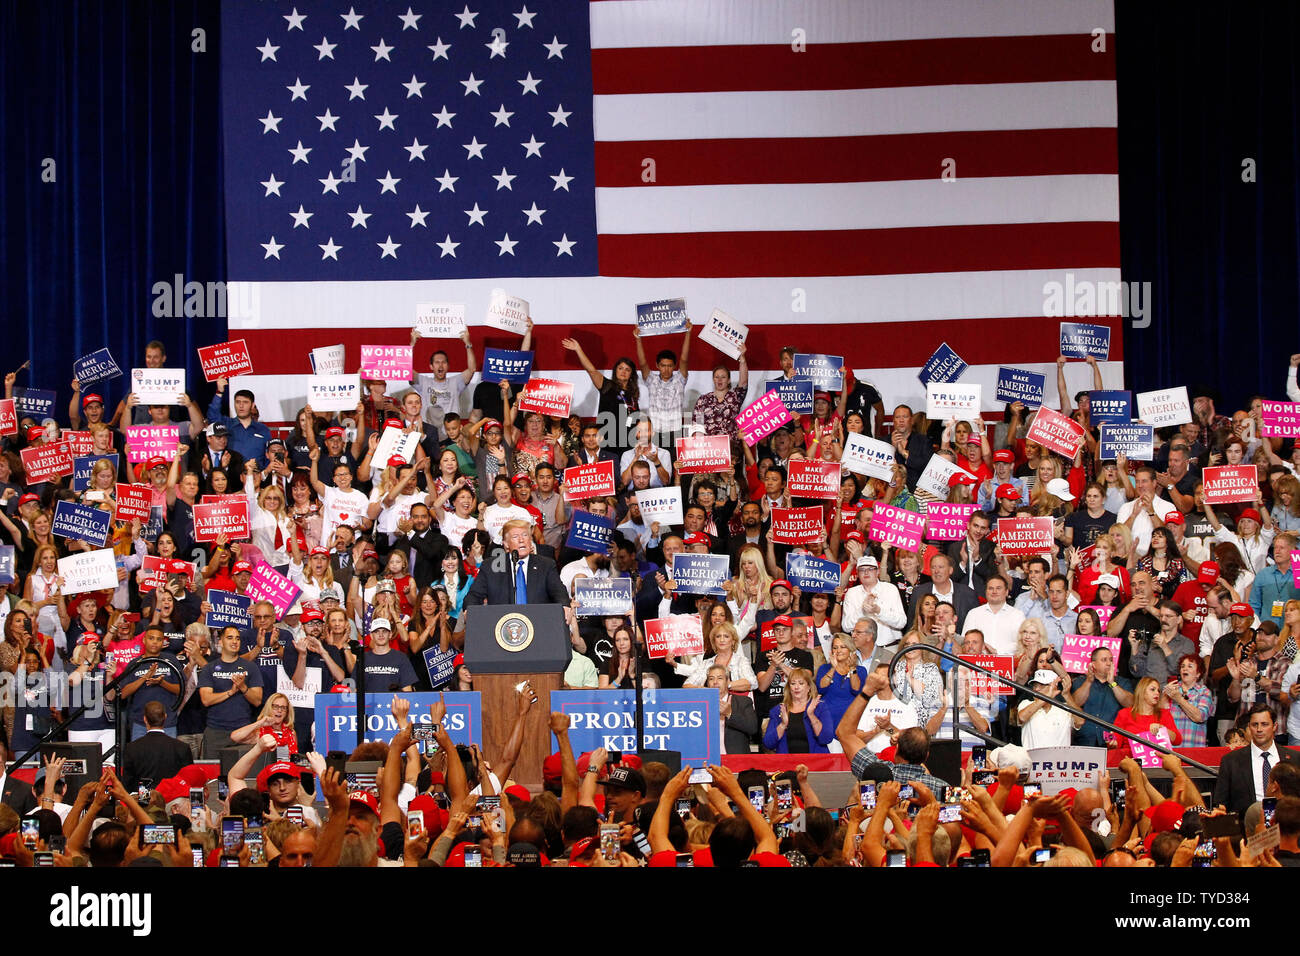 Le président Donald Trump partisans adresses lors d'un rassemblement à la Las Vegas Convention Center à Las Vegas, Nevada le 20 septembre, 2018. Photo de James Atoa/UPI Banque D'Images